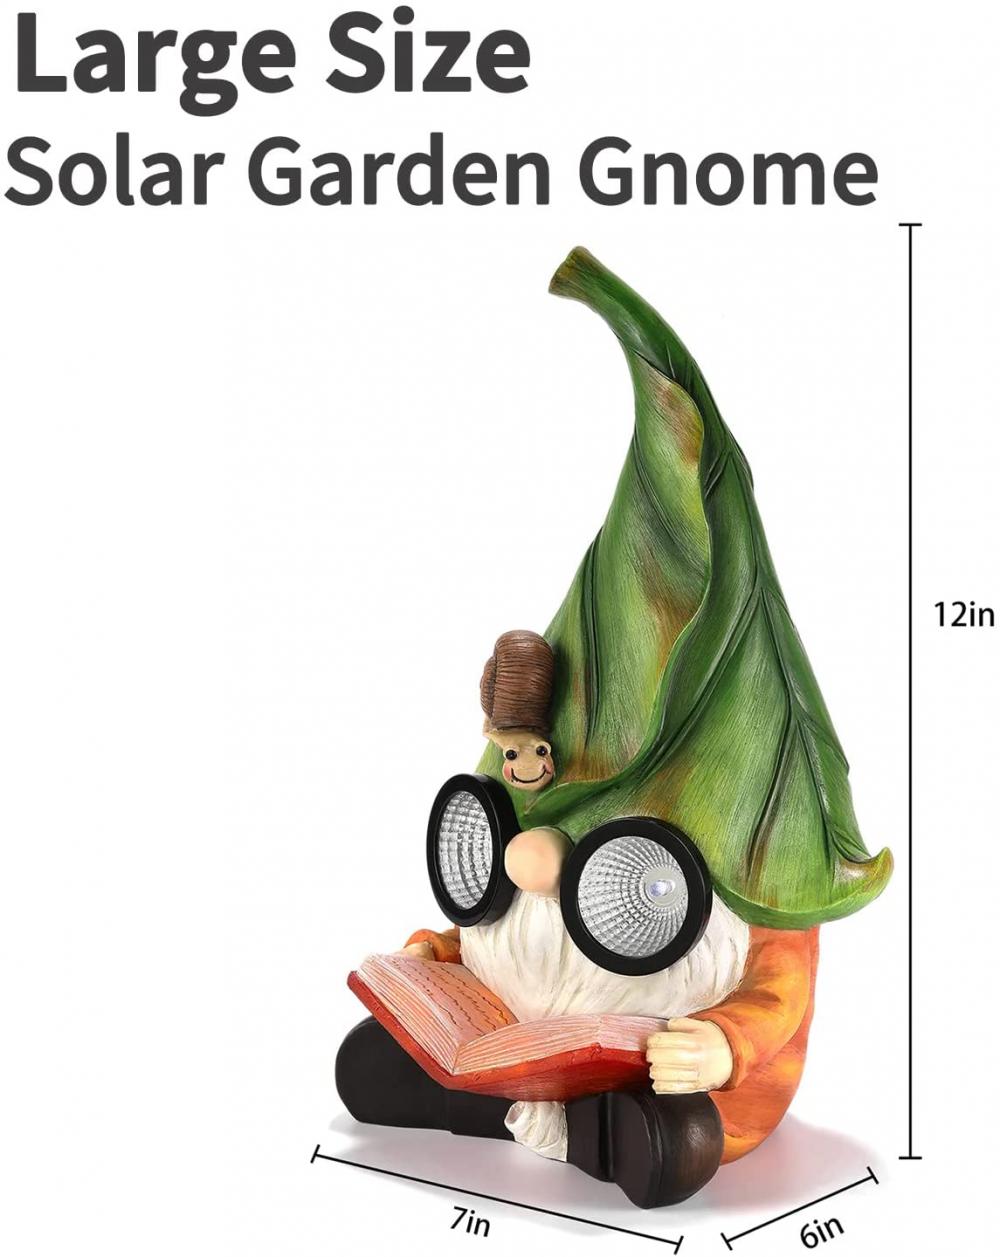 Figurine de gnome de résine avec des lumières LED solaires